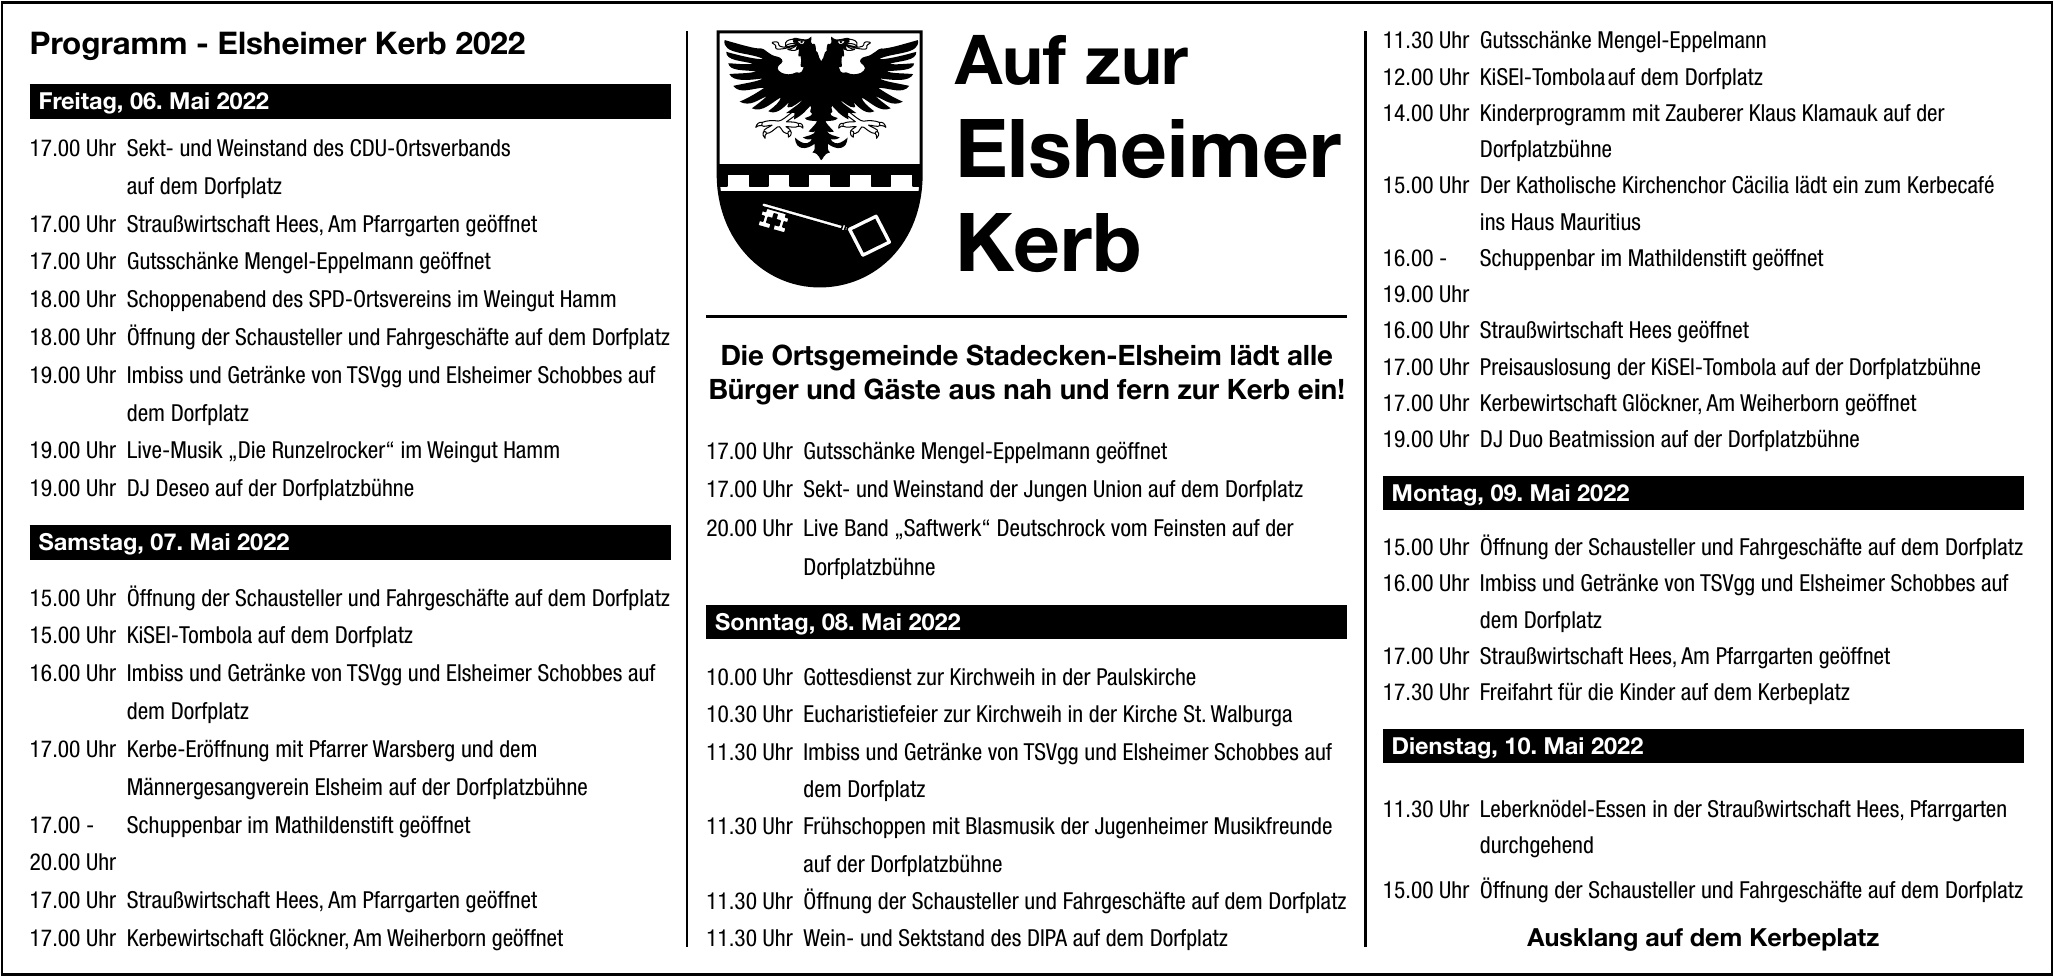 Programm - Elsheimer Kerb 2022